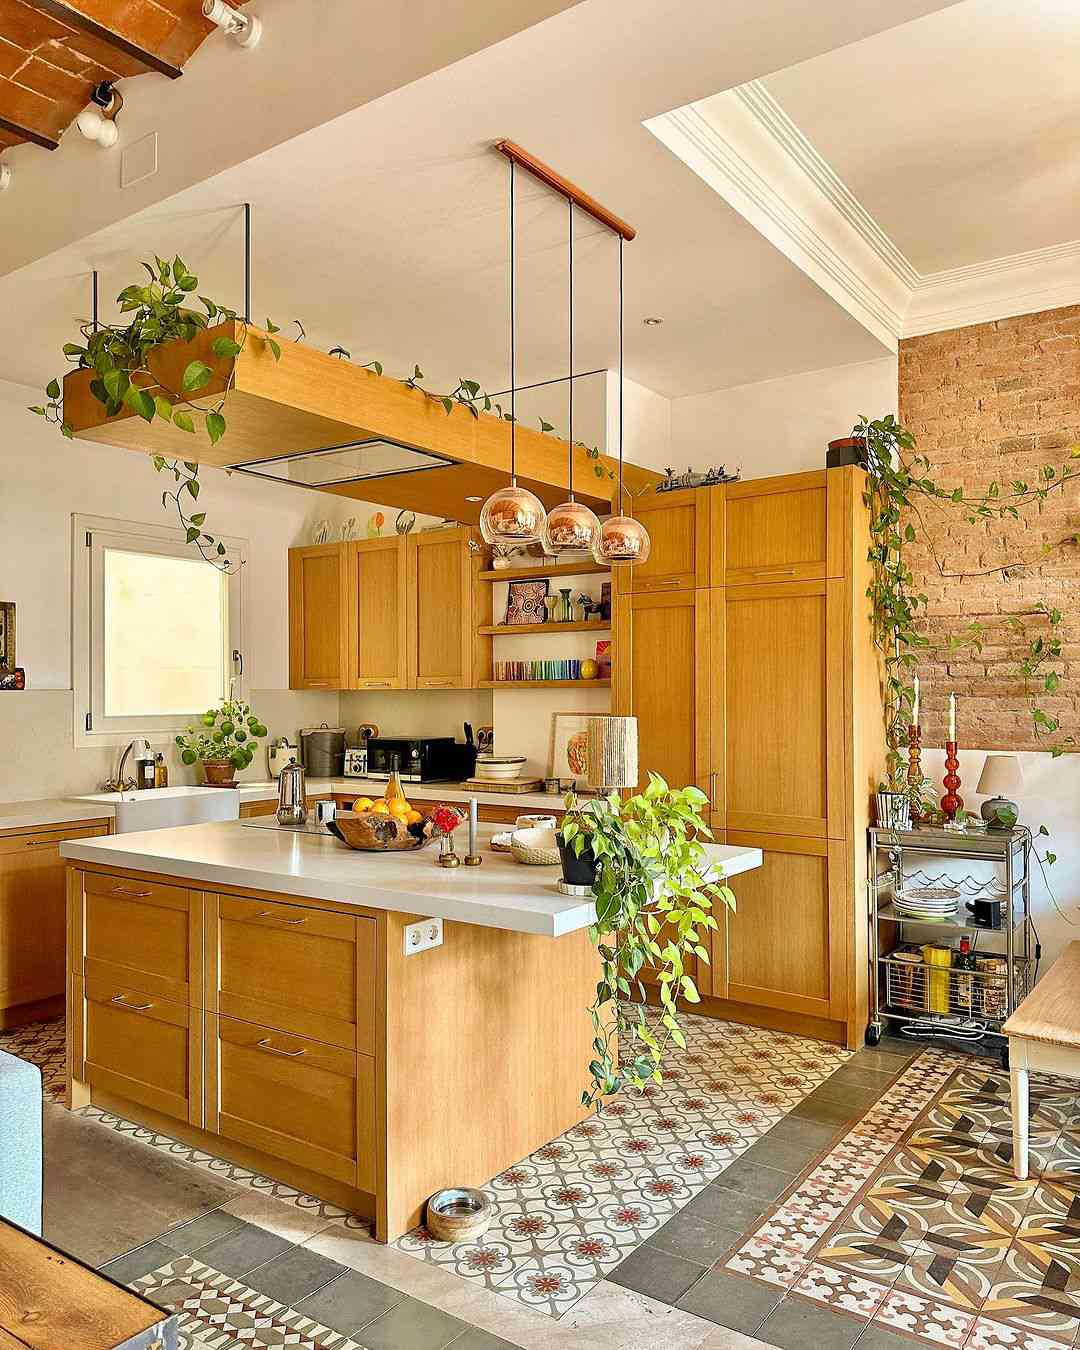 Cozinha com armários de madeira, azulejos e plantas ao redor